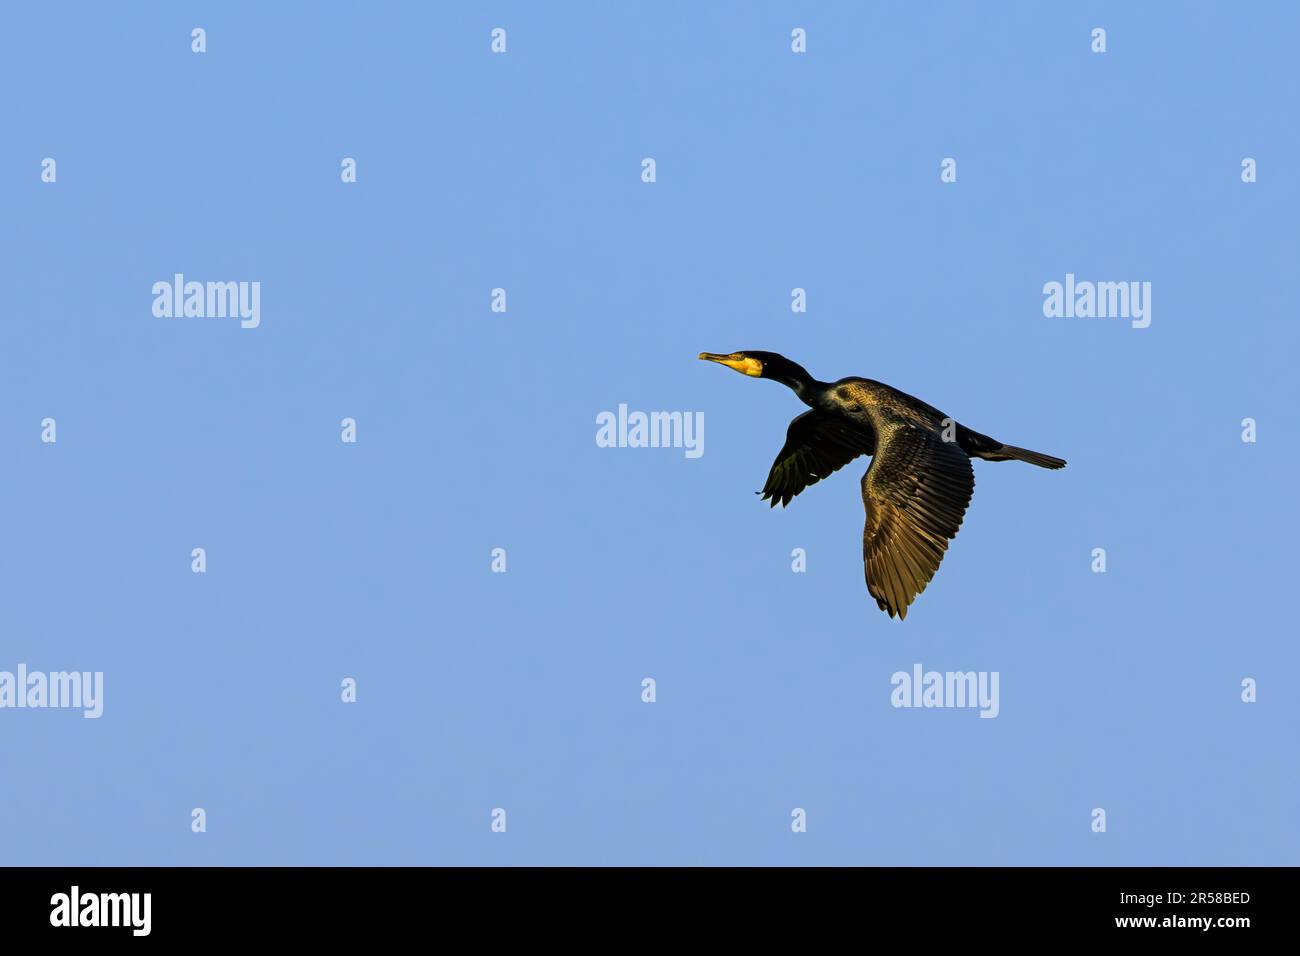 Nahaufnahme eines hochaufragenden Kormorant, Phalacrocorax Carbo, mit schwarzem Gefieder und goldenem Schimmer über den Flügelrändern in warmem Licht der aufgehenden Sonne ag Stockfoto